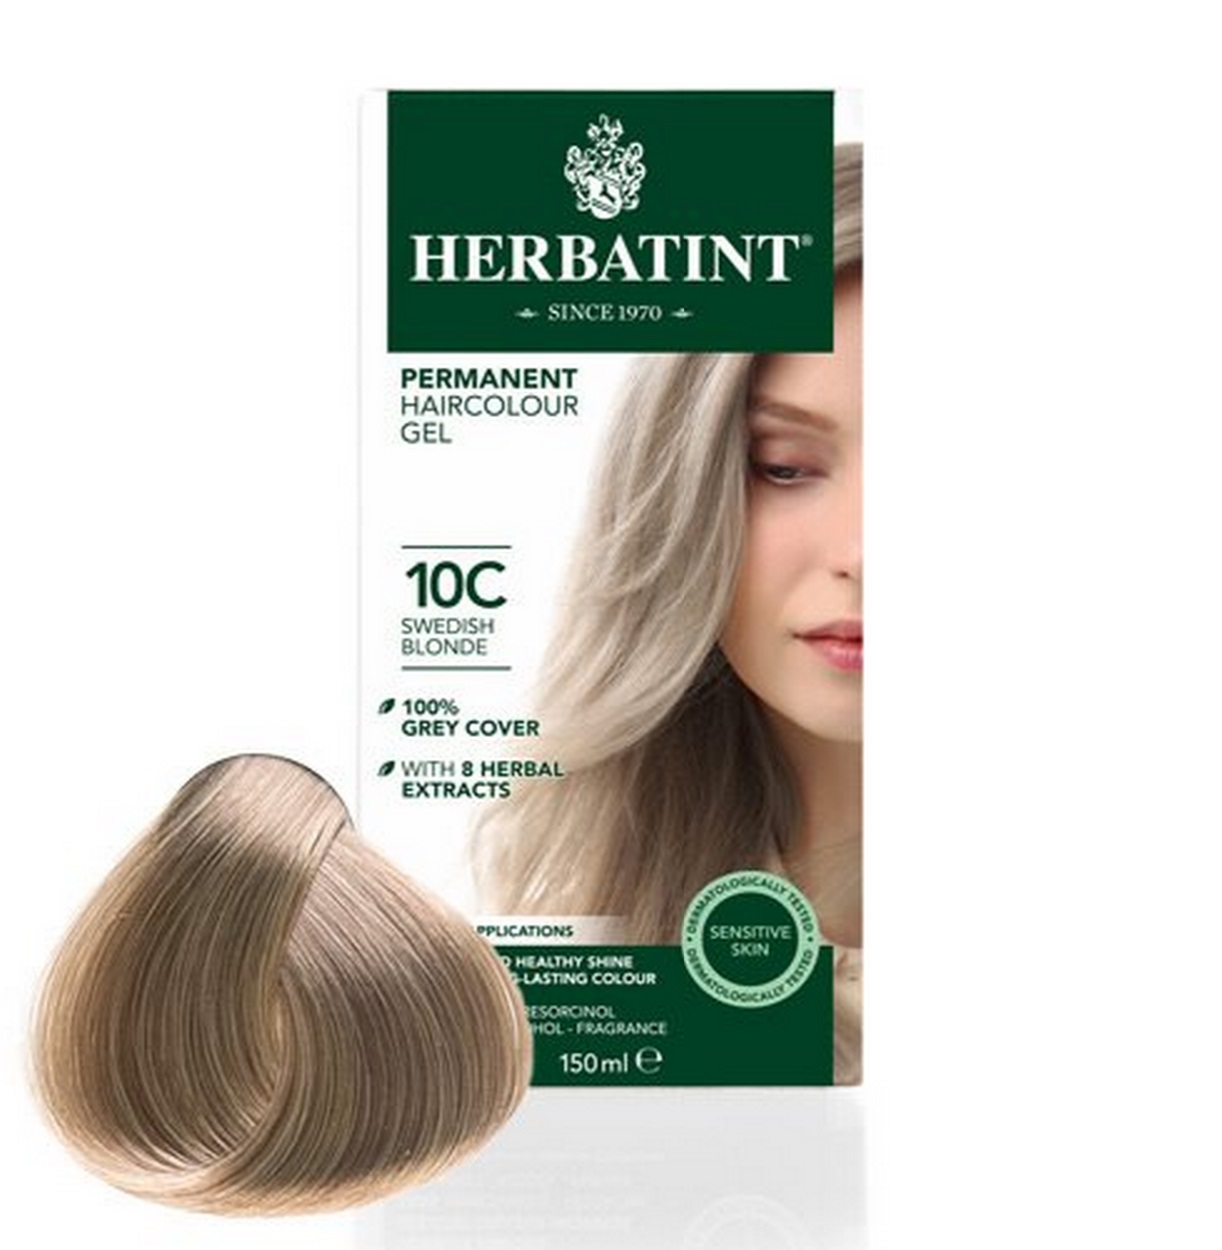 Billede af Herbatint 10C hårfarve Swedish Blonde, 150ml.